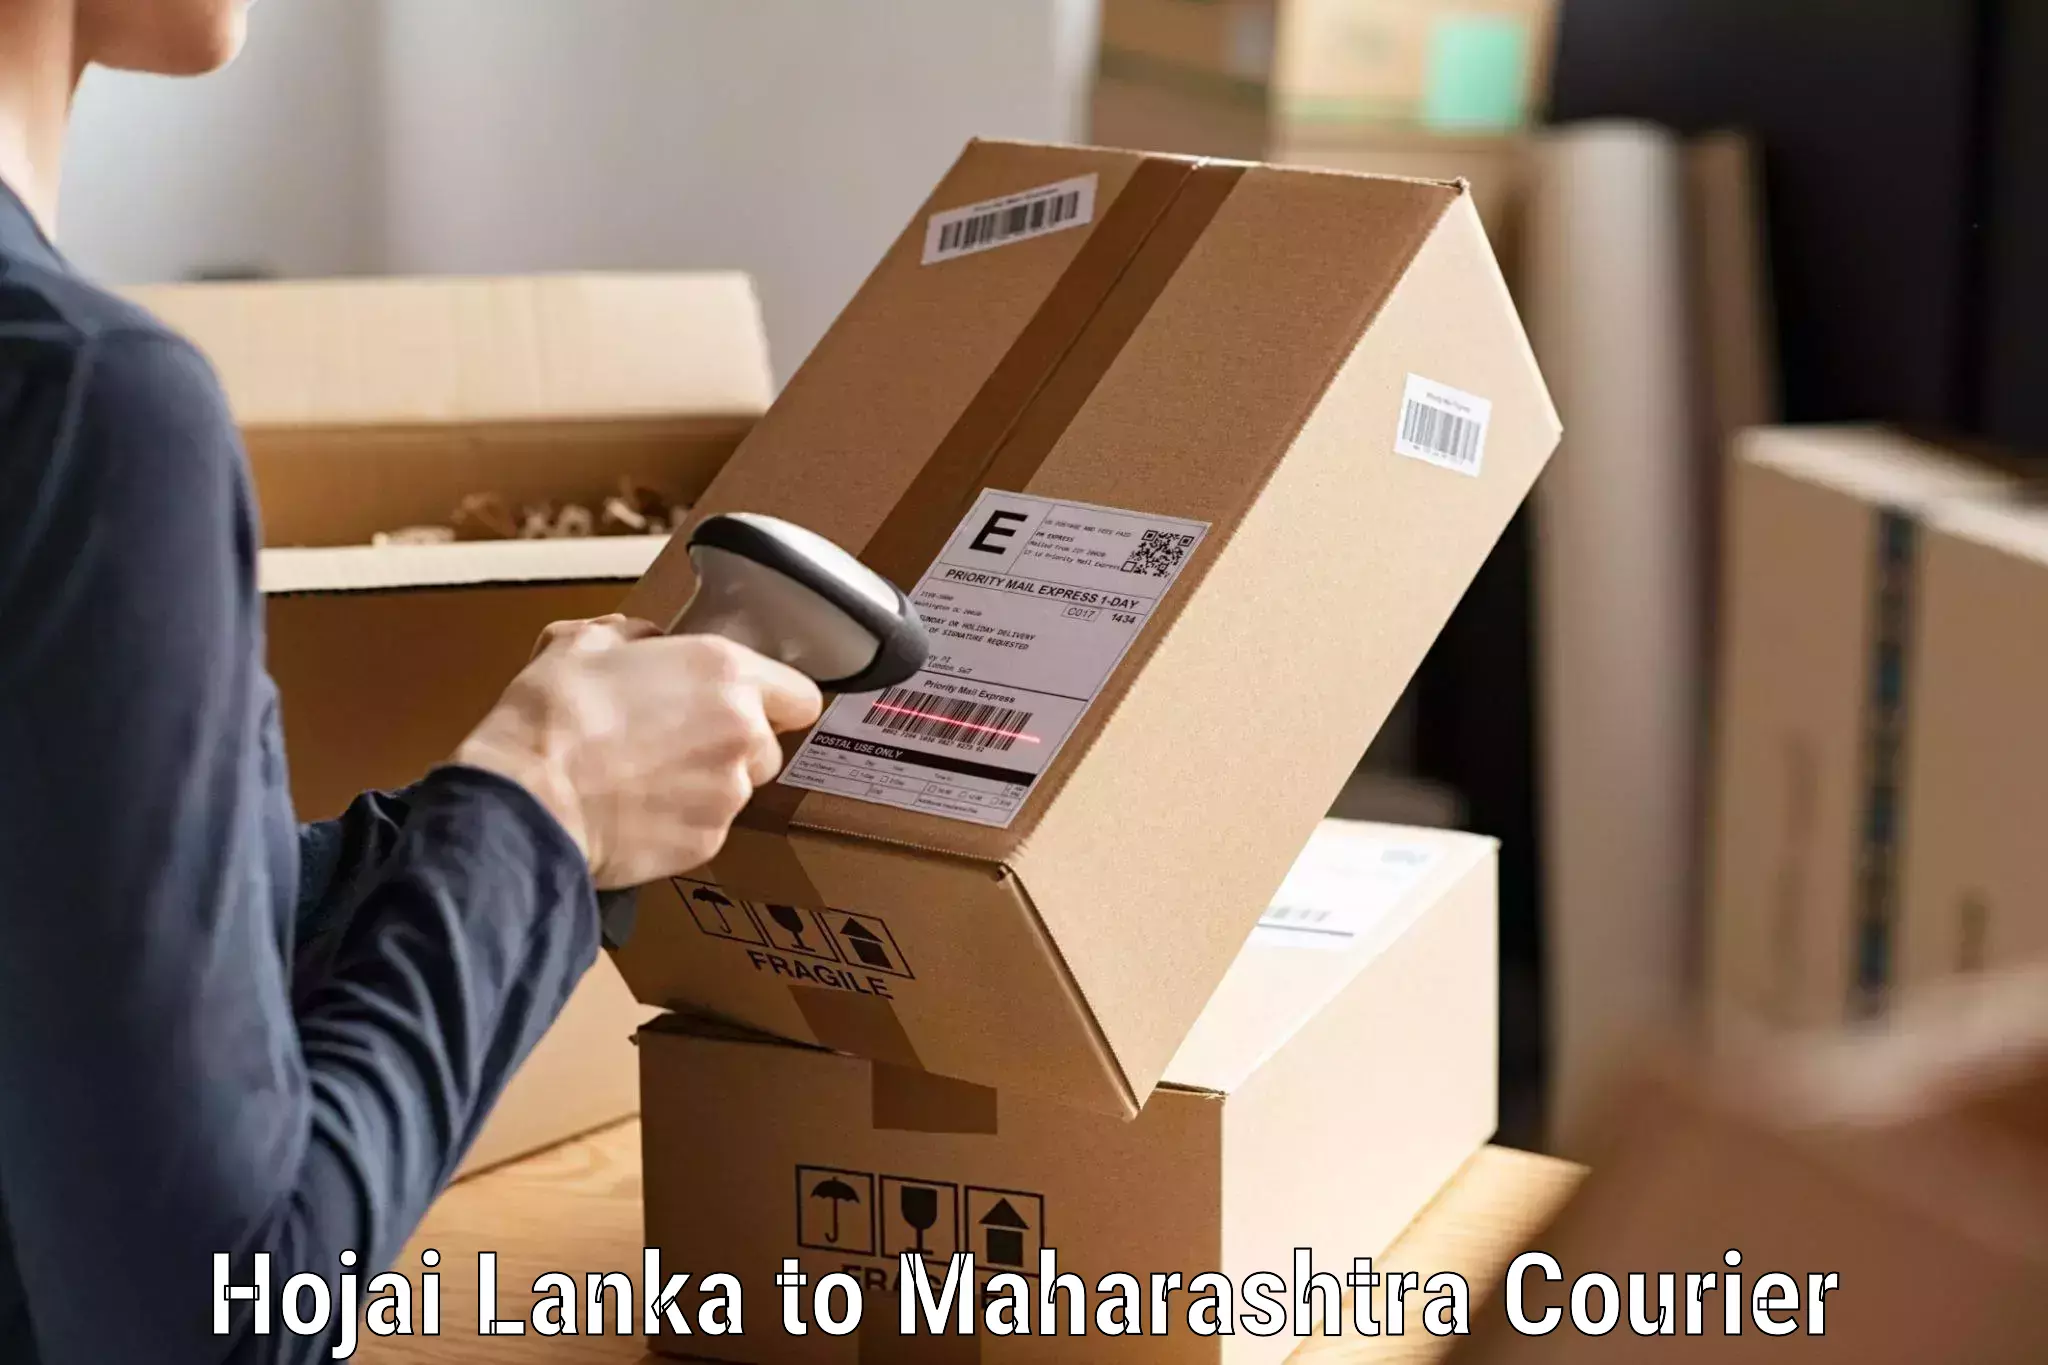 Doorstep delivery service Hojai Lanka to Maharashtra